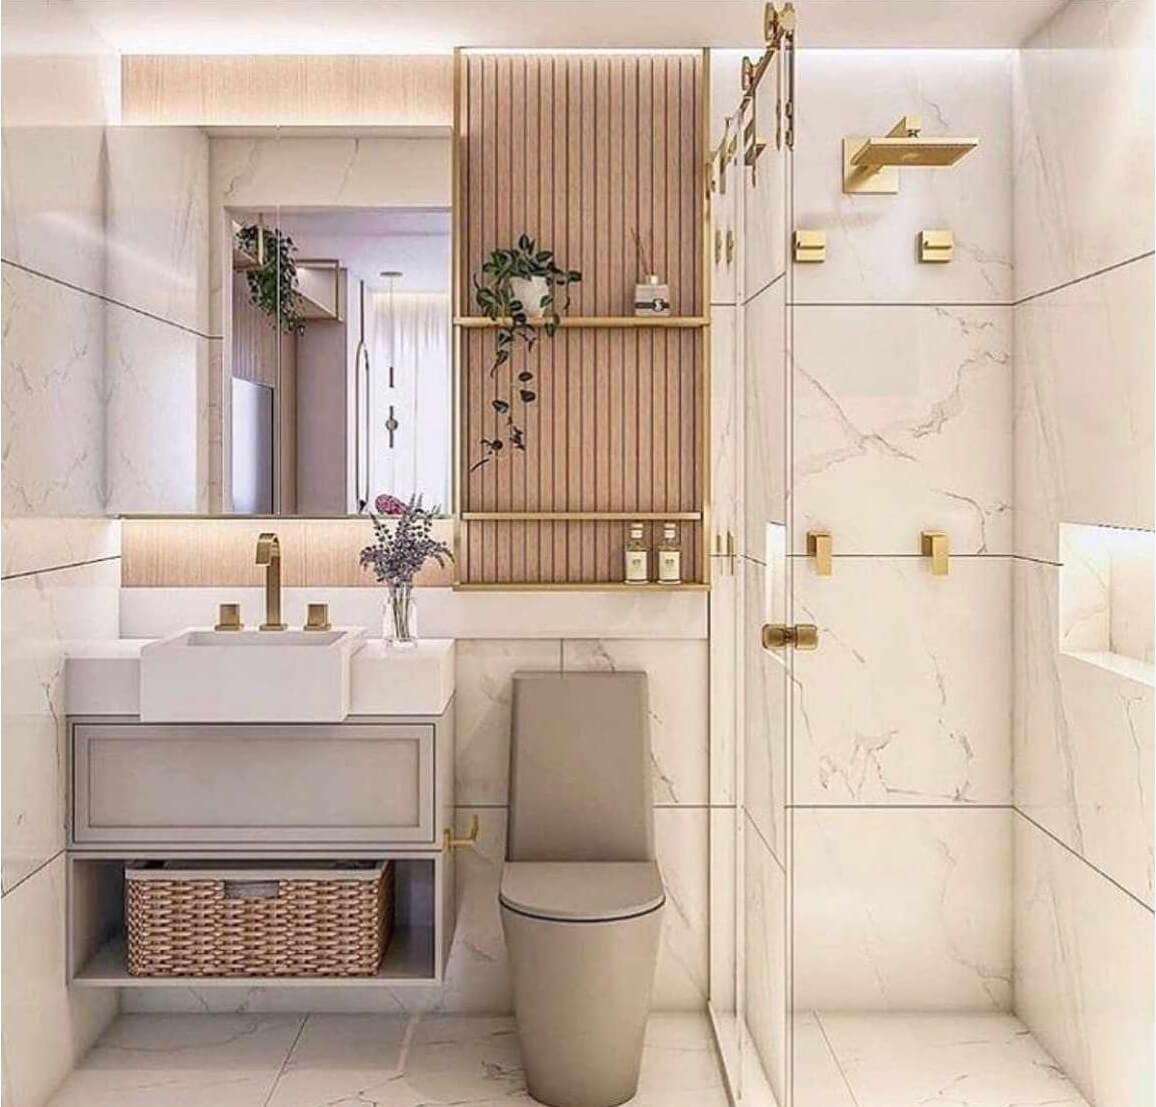 Thiết kế phòng tắm: Sự sáng tạo của thiết kế phòng tắm đã tạo ra những không gian đẹp và tiện nghi hơn. Với các ý tưởng mới và hiện đại, bạn sẽ phát hiện ra công nghệ cải tiến và các thiết bị tốt hơn giúp tạo ra không gian phòng tắm đẳng cấp.